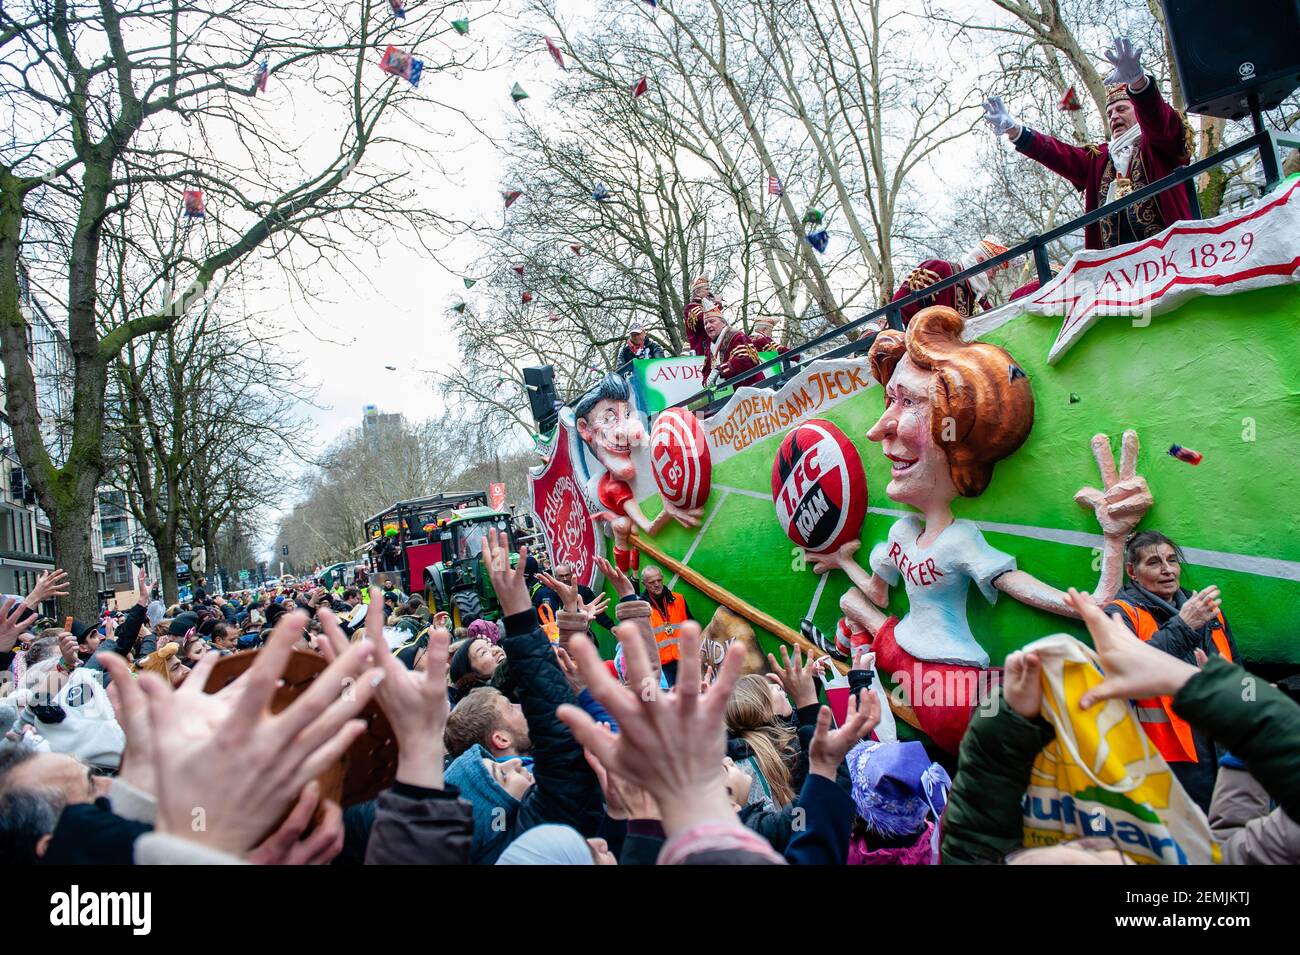 Menschen in Kostümen werden gesehen, wie sie während der Parade Süßigkeiten in die Menge werfen. In Düsseldorf stehen nicht weniger als 300 Karnevalsveranstaltungen, Bälle, Jubiläen, Empfänge und Kostümpartys auf dem Kalender der Karnevalsveranstaltungen. Das Motto dieser Saison ist ‘gemeinsam Jeck’. Die Feierlichkeiten kulminieren in der Rosenmontagsparade. Mehr als 30 Musikensembles und 5.000 Teilnehmer nehmen an der Prozession durch die Stadt Teil. Aufwendig gebaute und dekorierte Wagen adressieren kulturelle und politische Themen und können satirisch, urkomisch und sogar kontrovers sein. Die politisch thematisierten Schwimmer von satir Stockfoto